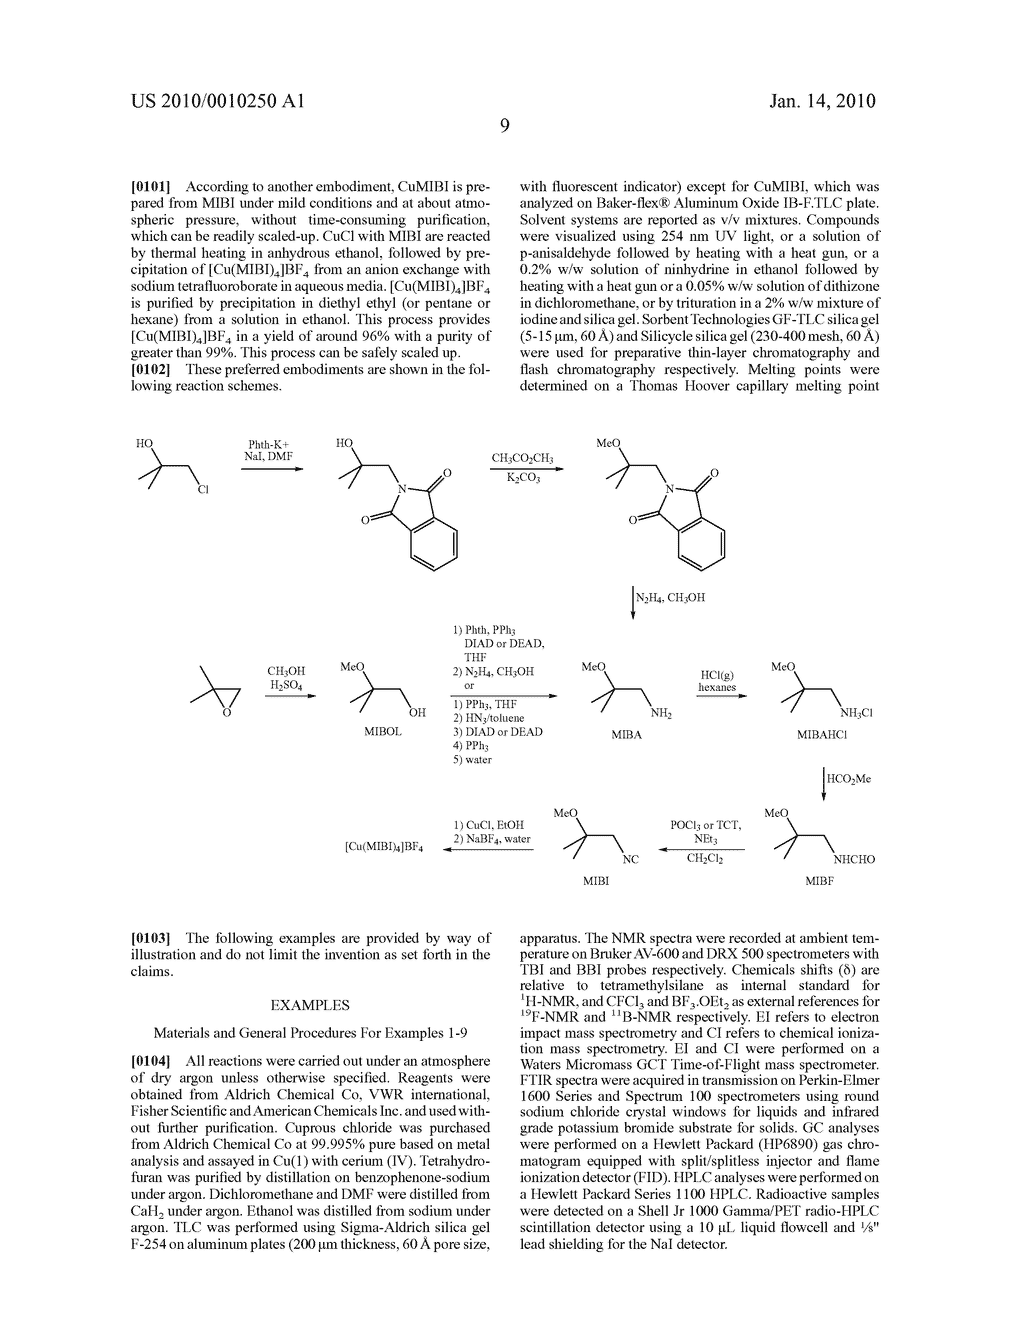 METHODS FOR PREPARING 2-METHOXYISOBUTYLISONITRILE AND TETRAKIS(2-METHOXYISOBUTYLISONITRILE)COPPER(I) TETRAFLUOROBORATE - diagram, schematic, and image 10